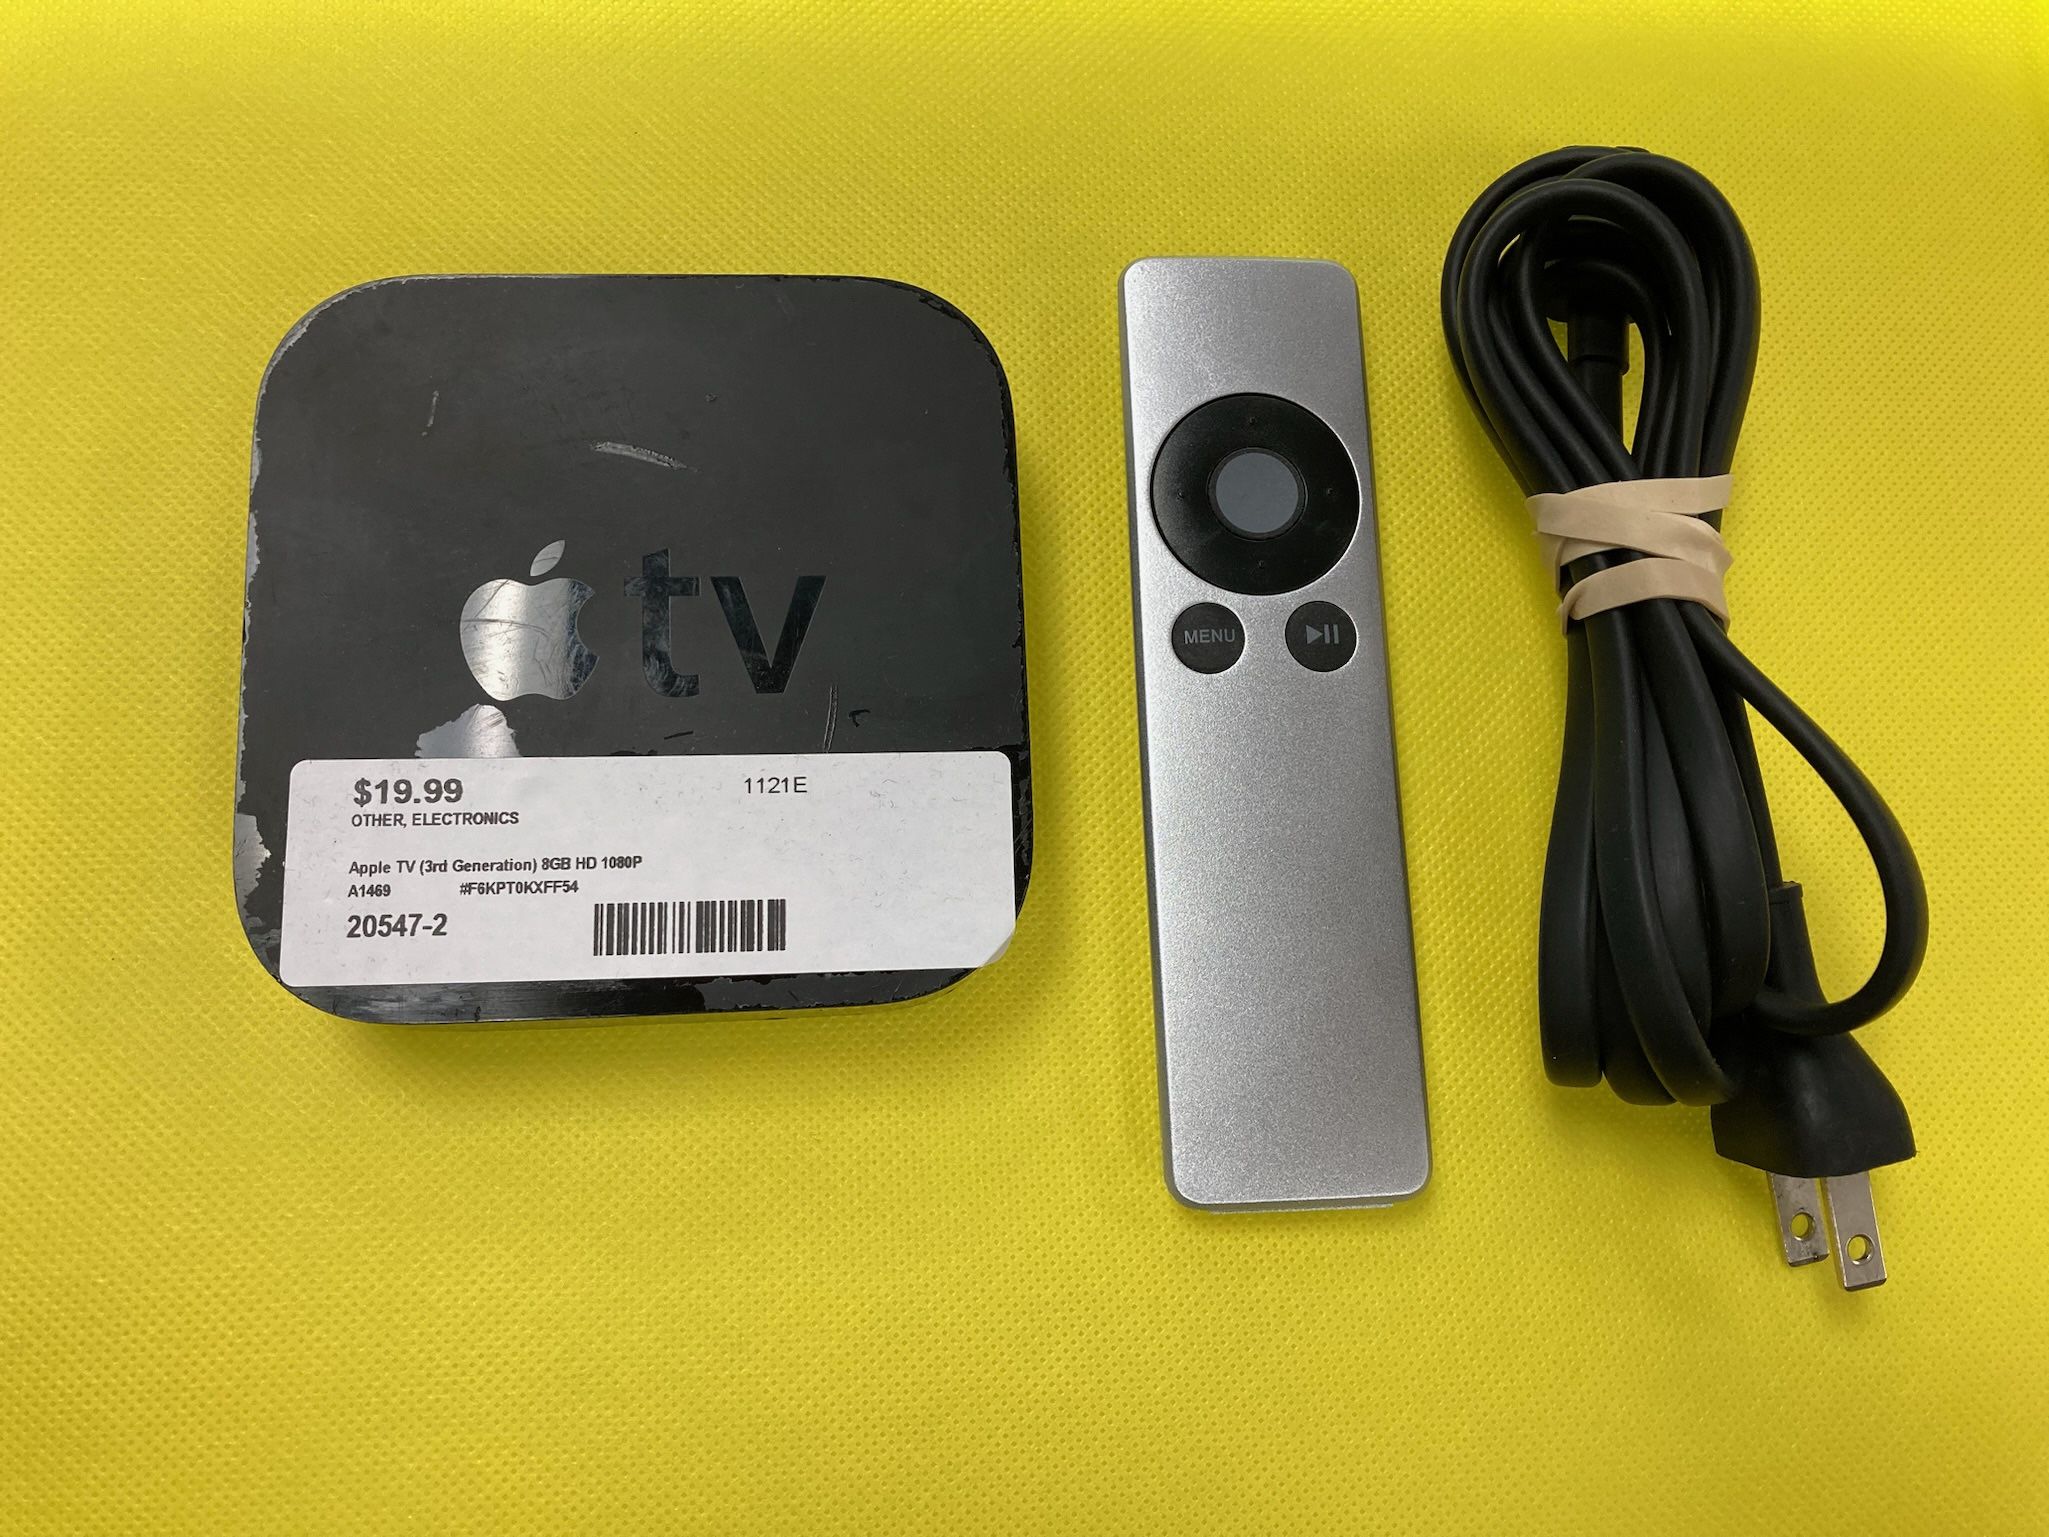 Apple TV (3rd Generation) 8GB HD Media Streamer A1469 